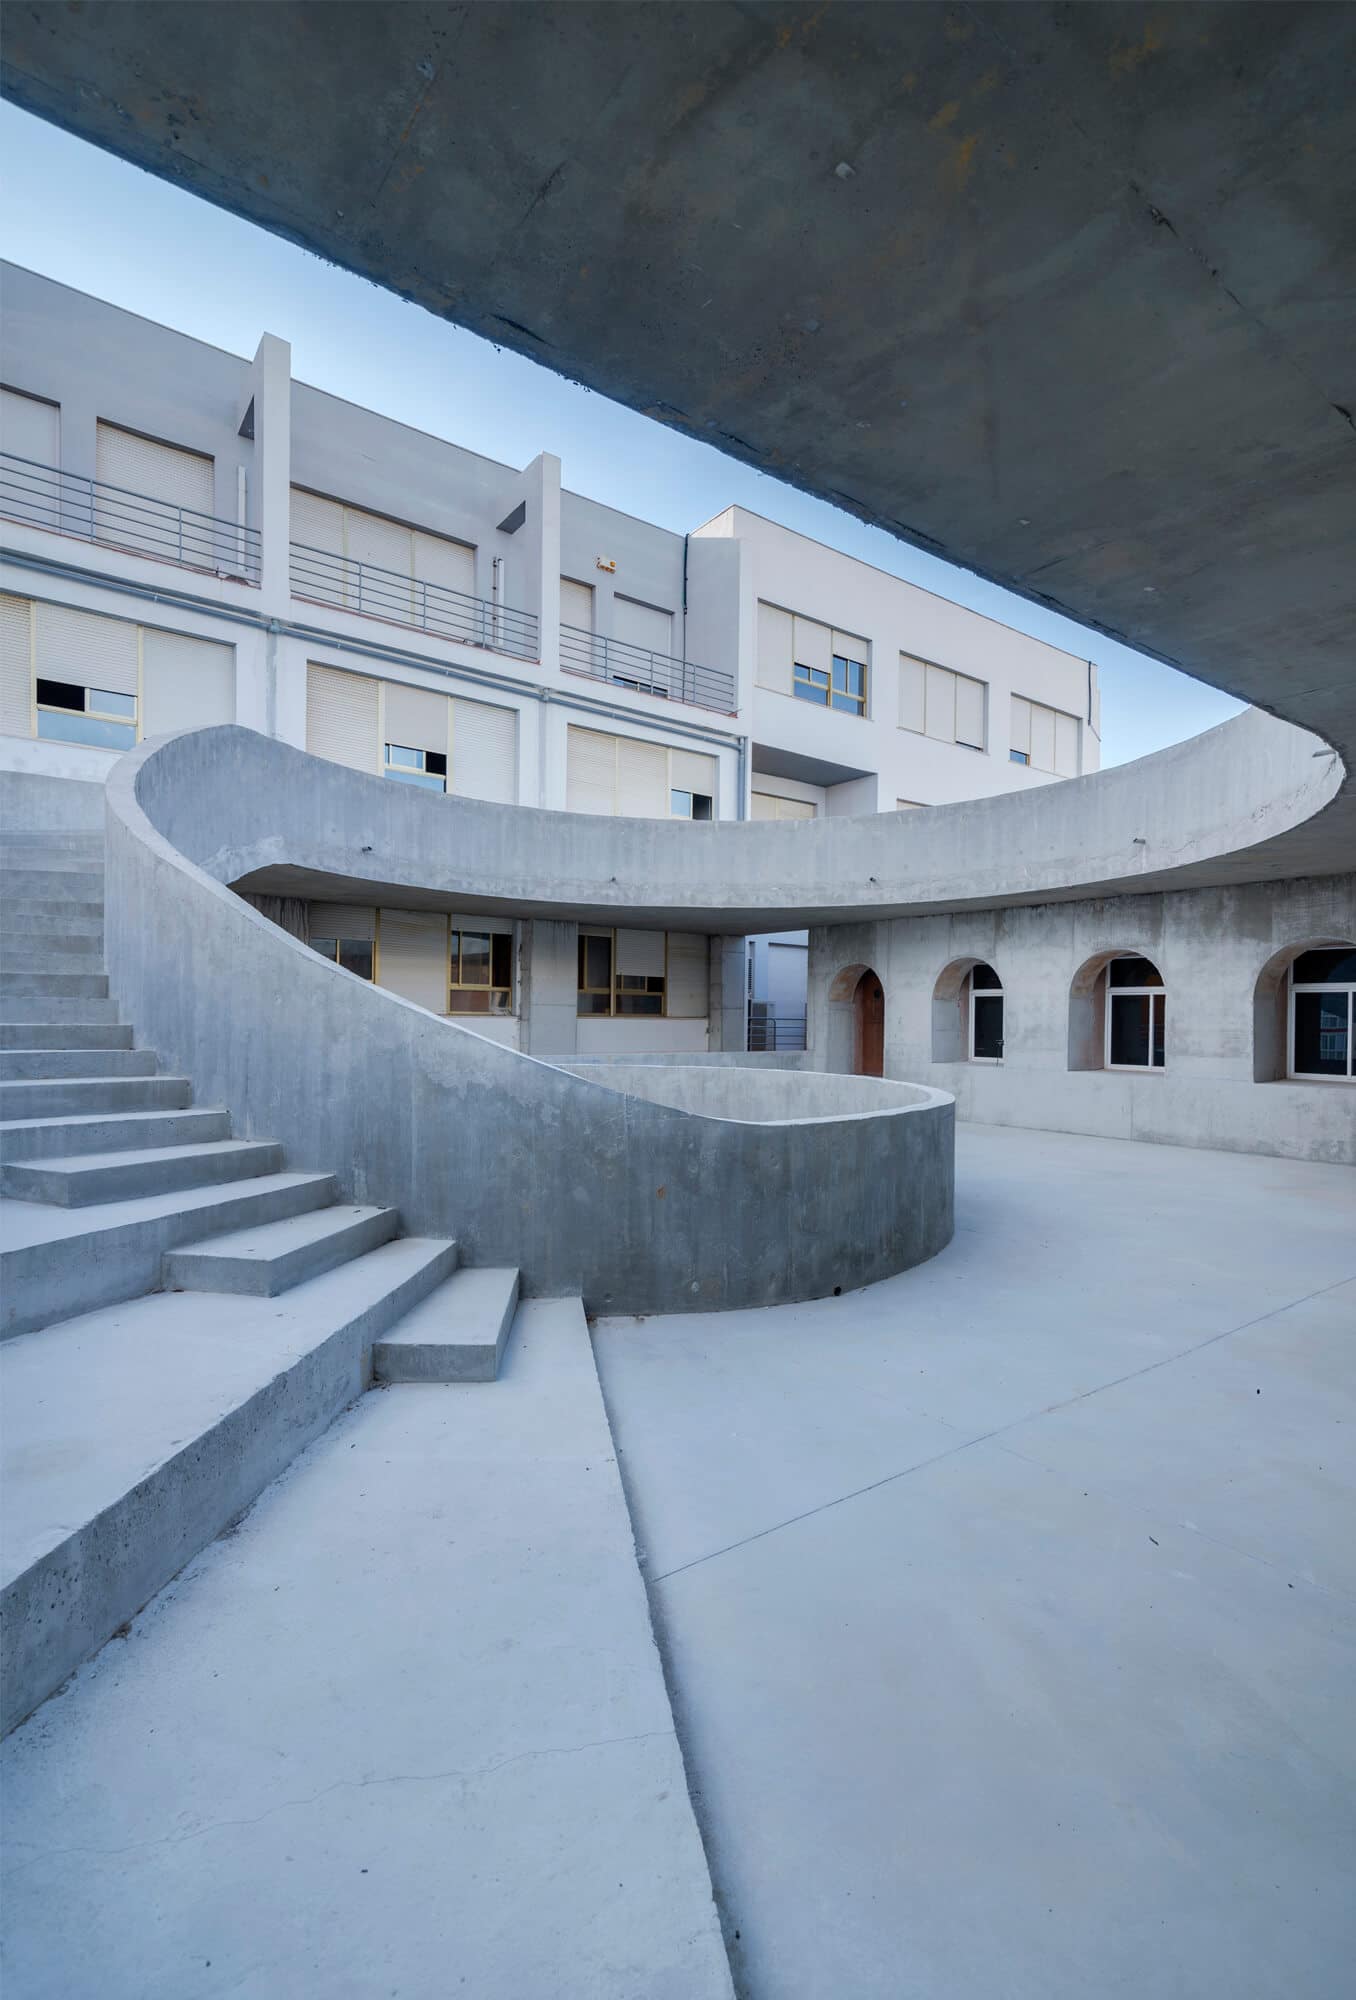 Innenhof, Fakultät für bildende Künste der Universität Malaga,DJarquitectura, Foto: Nicolás Díaz